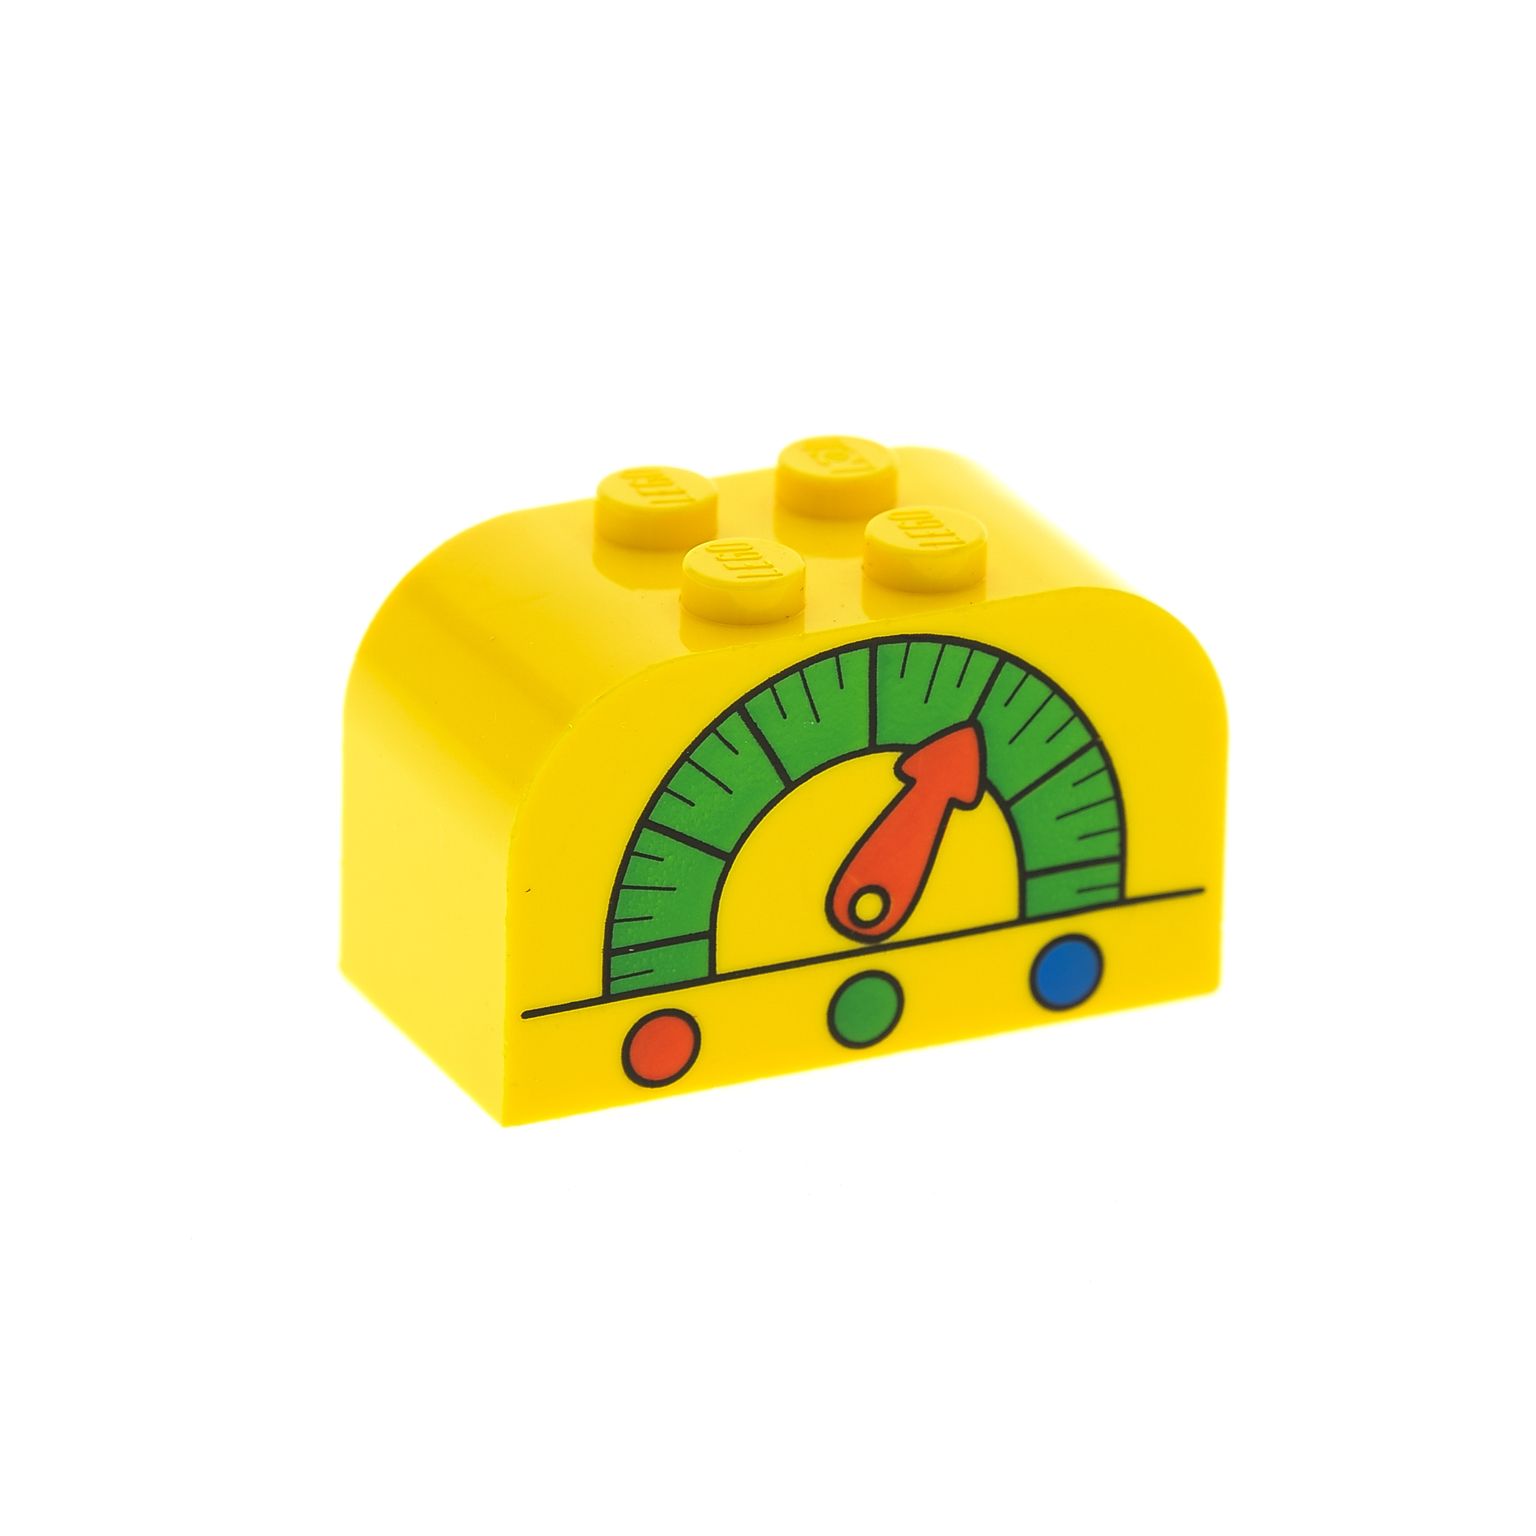 1x Lego System Rundstein Motiv Uhr gelb schwarz 2x4x2 halbrund bedruckt 4744pb15 